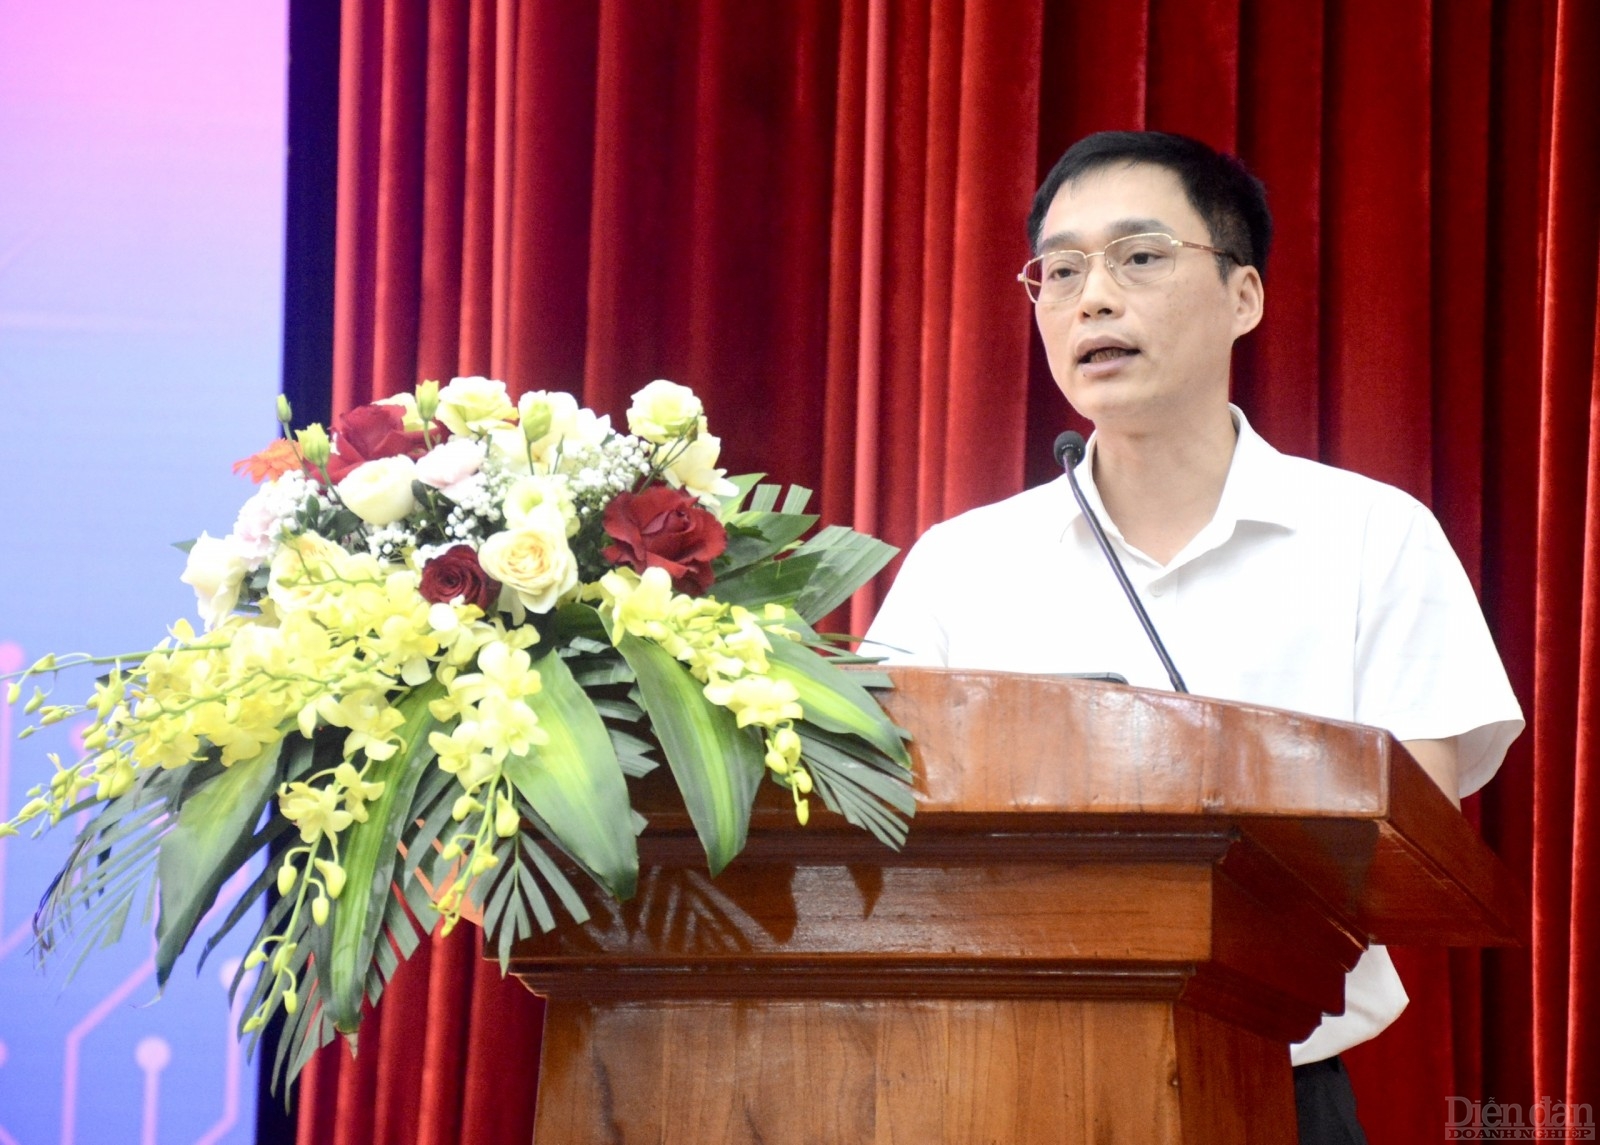 Ông Nguyễn Hoàng Cương, Trưởng ban công nghệ bán dẫn Tập đoàn Viettel trình bày tham luận: “Định hướng phát triển công nghệ bán dẫn tại Tập đoàn Viettel”.